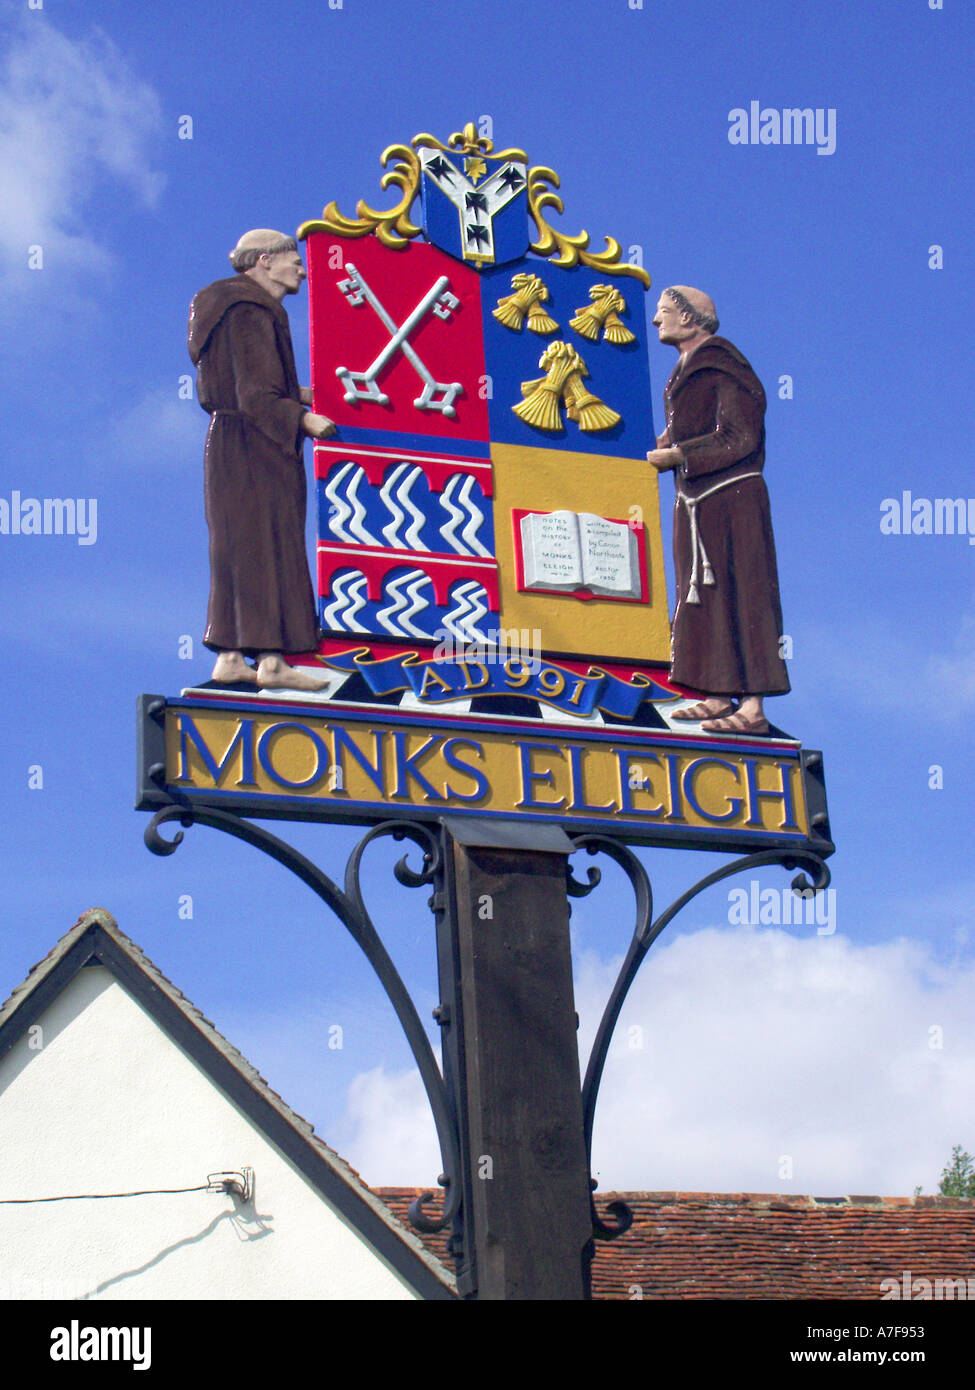 Monks in Milden close up of village coloré signe représentant des figures et des caractéristiques associées à la région de l'East Anglia Suffolk Angleterre UK Banque D'Images